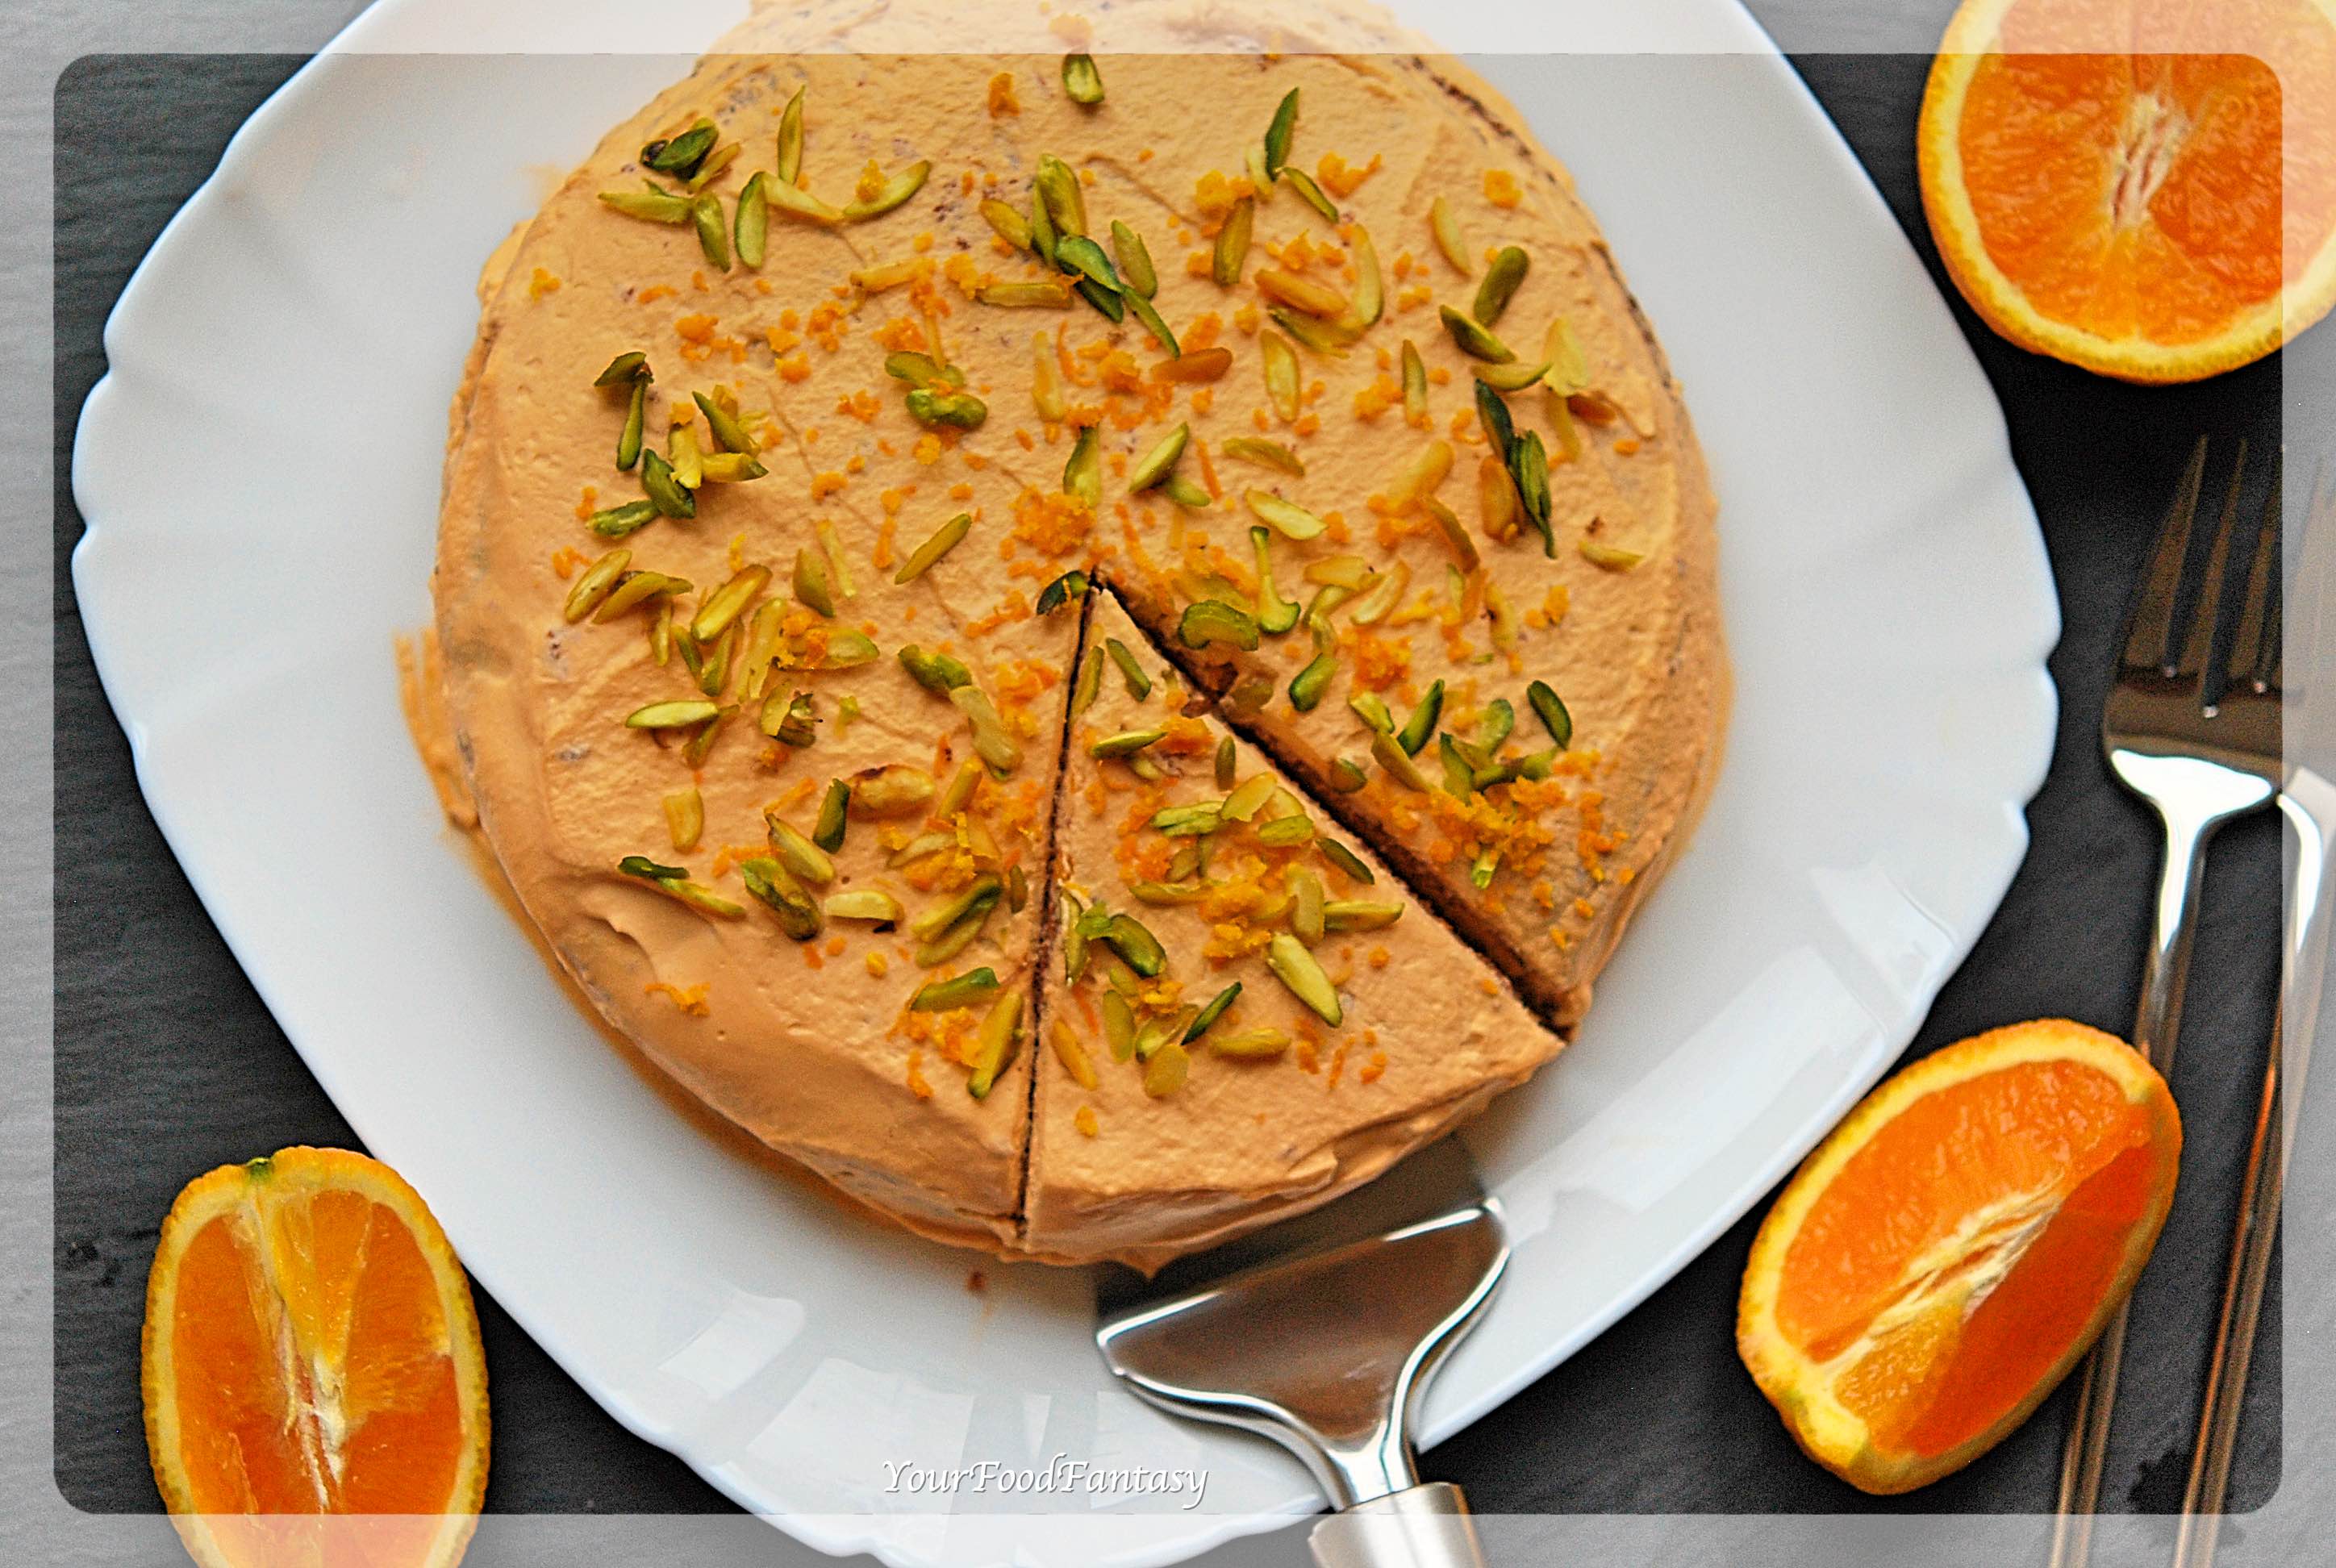 Orange Pistachio Cake Recipe | Your Food Fantasy